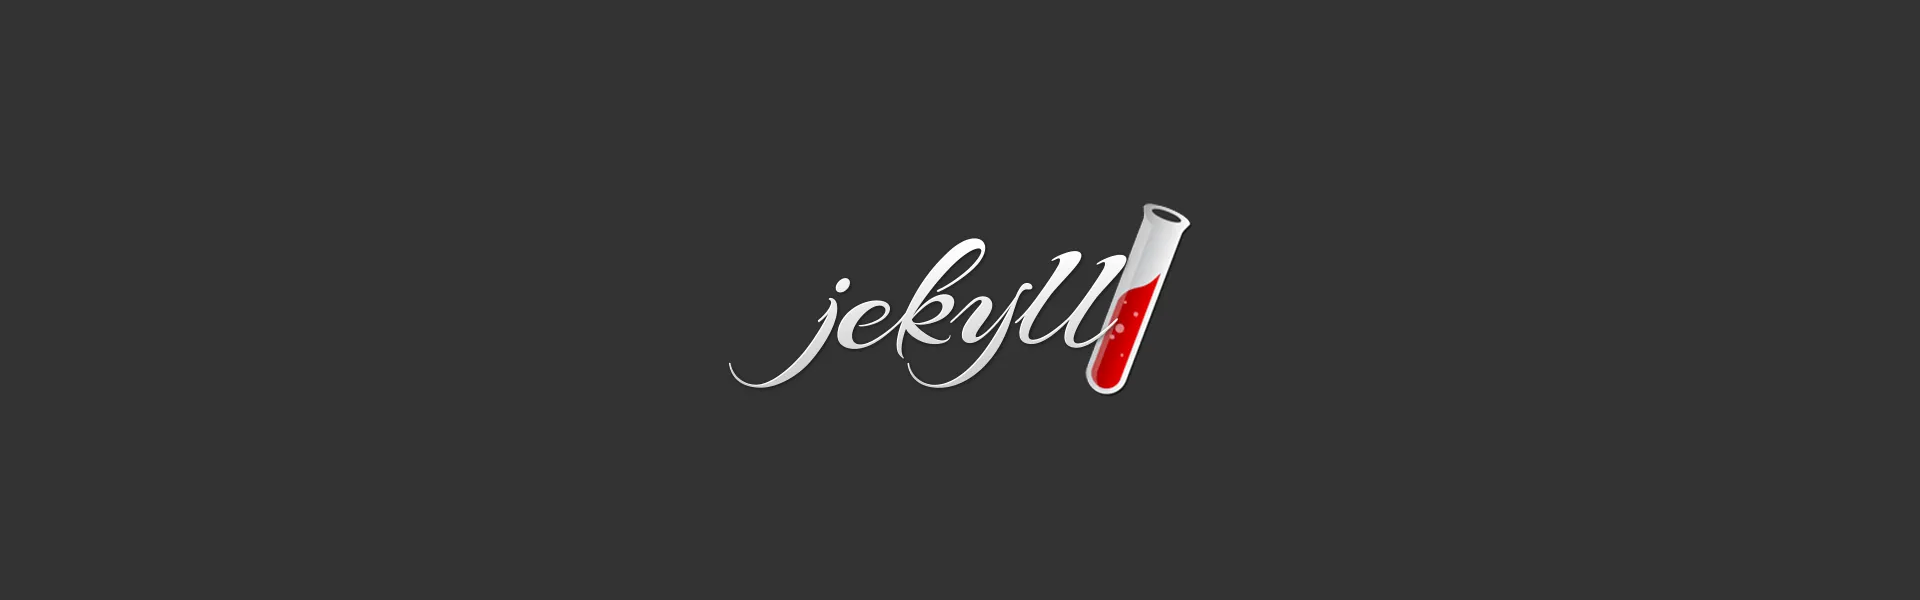 The Jekyll logo